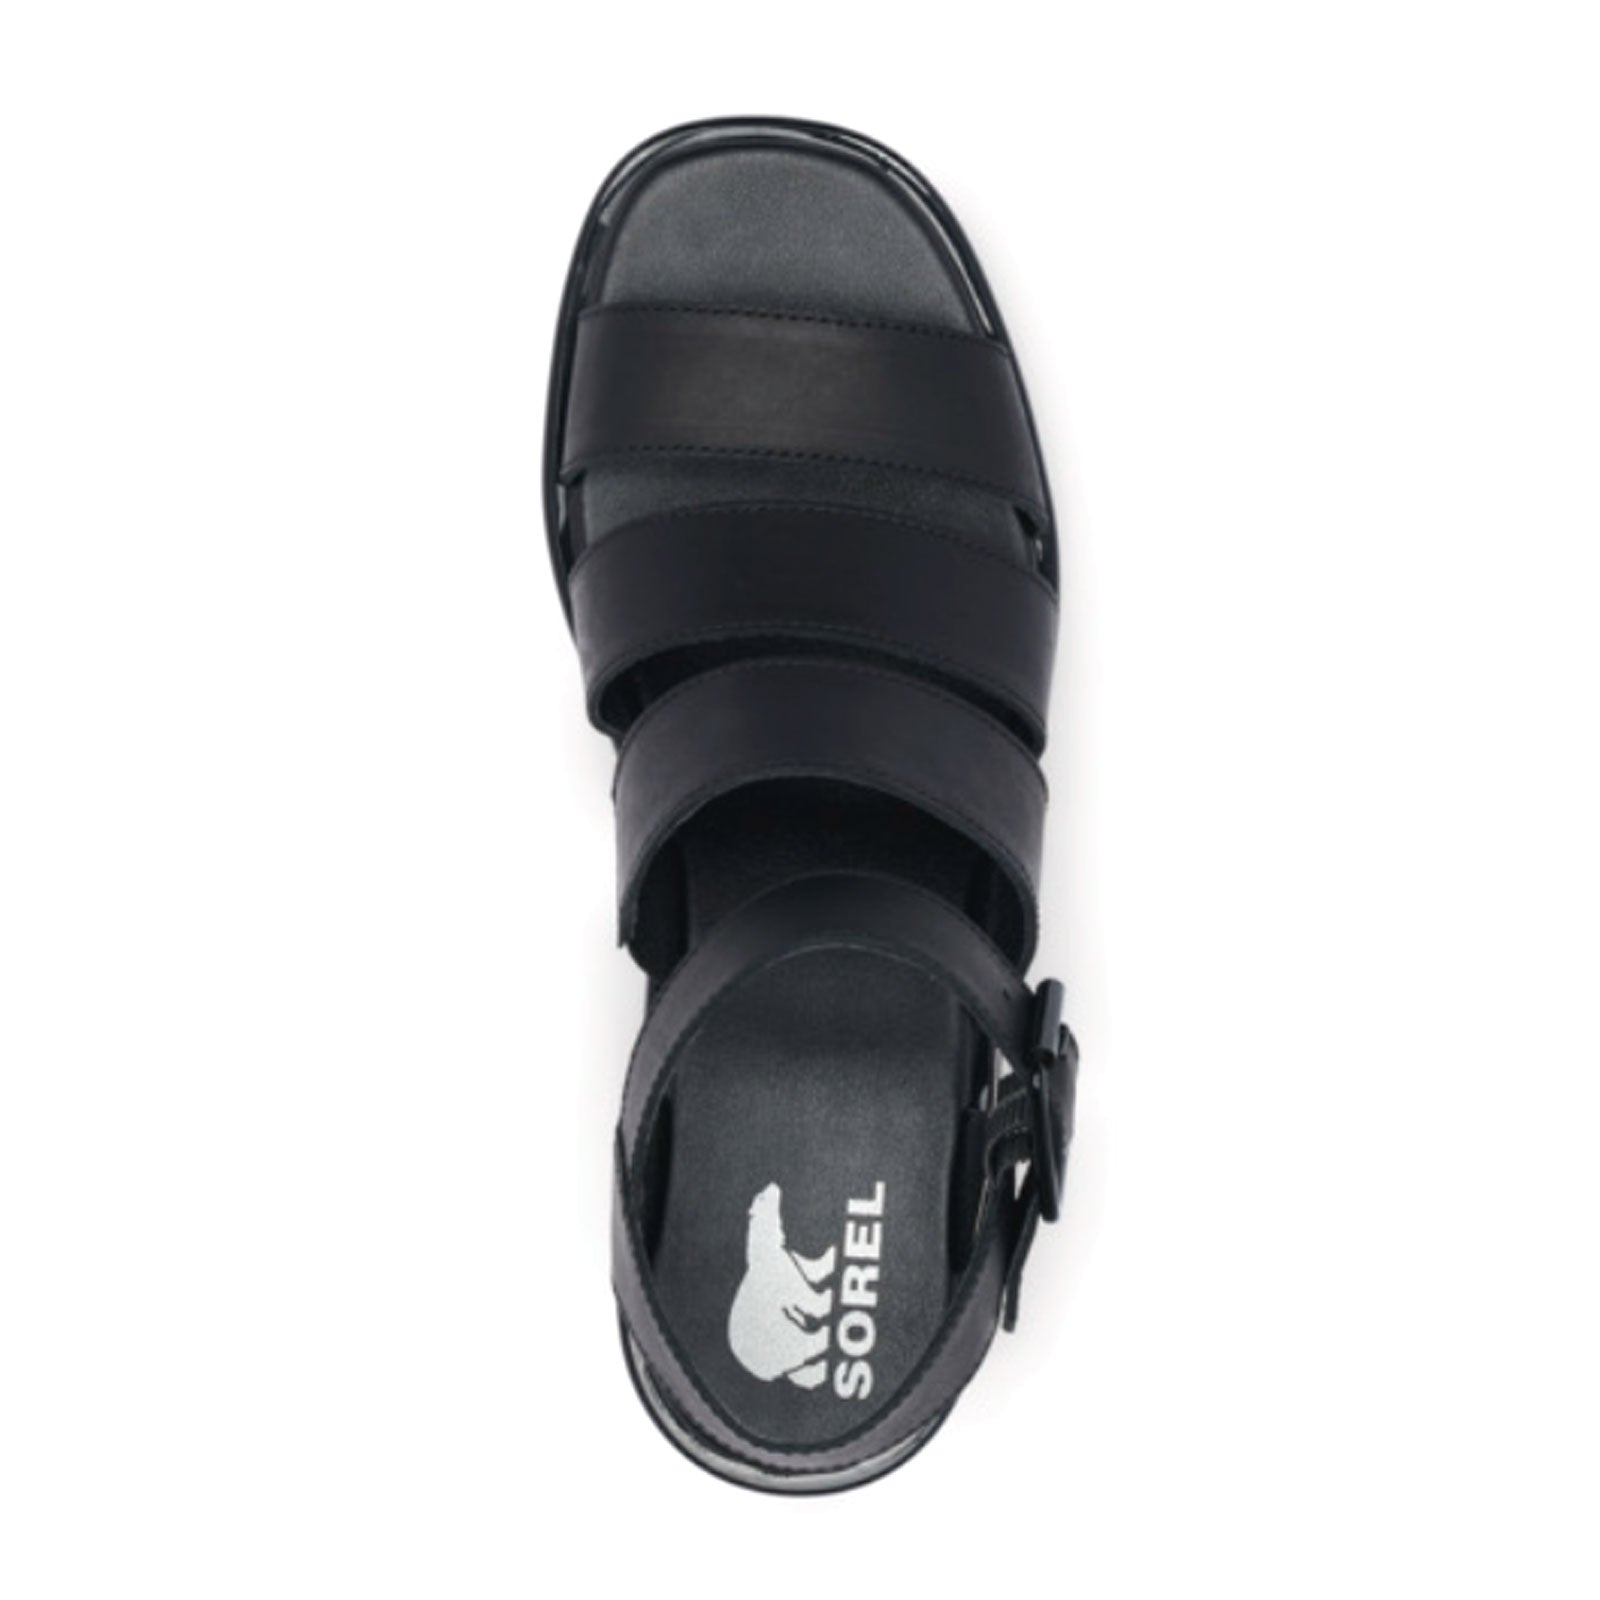 Sorel Joanie III Ankle Strap (Women) - Black/Black Sandals - Wedge - The Heel Shoe Fitters